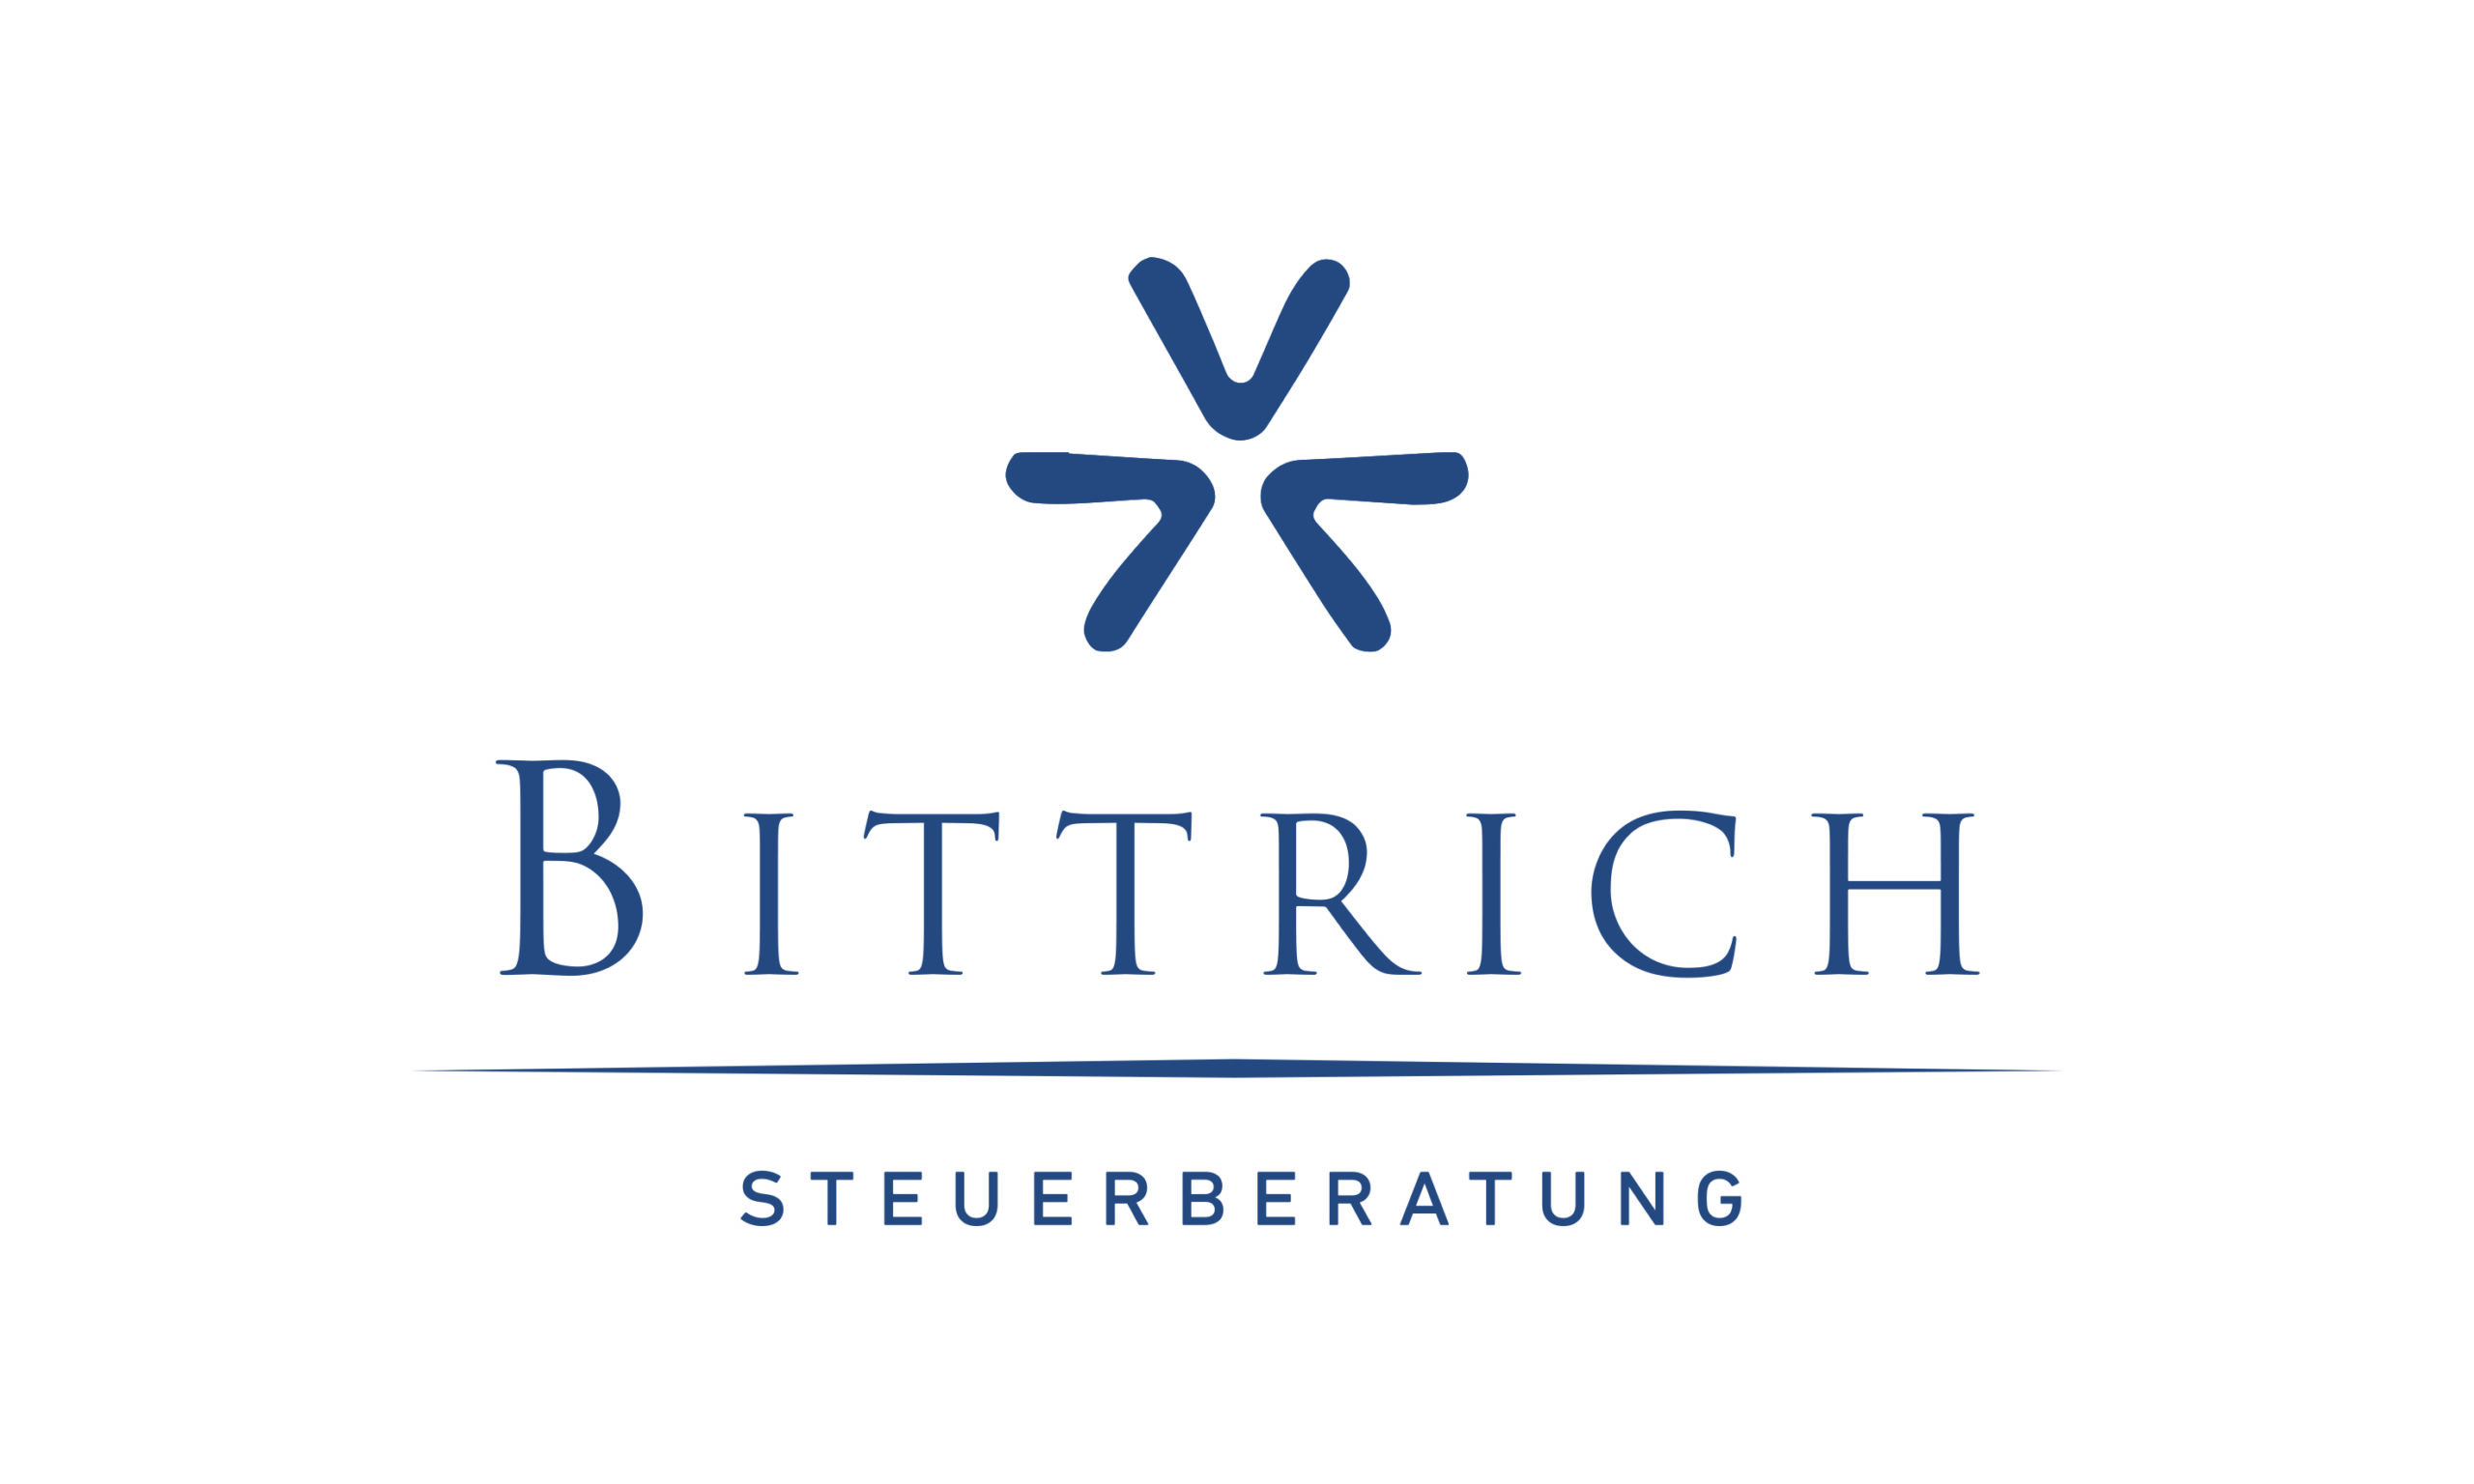 Bittrich und Bittrich Logo